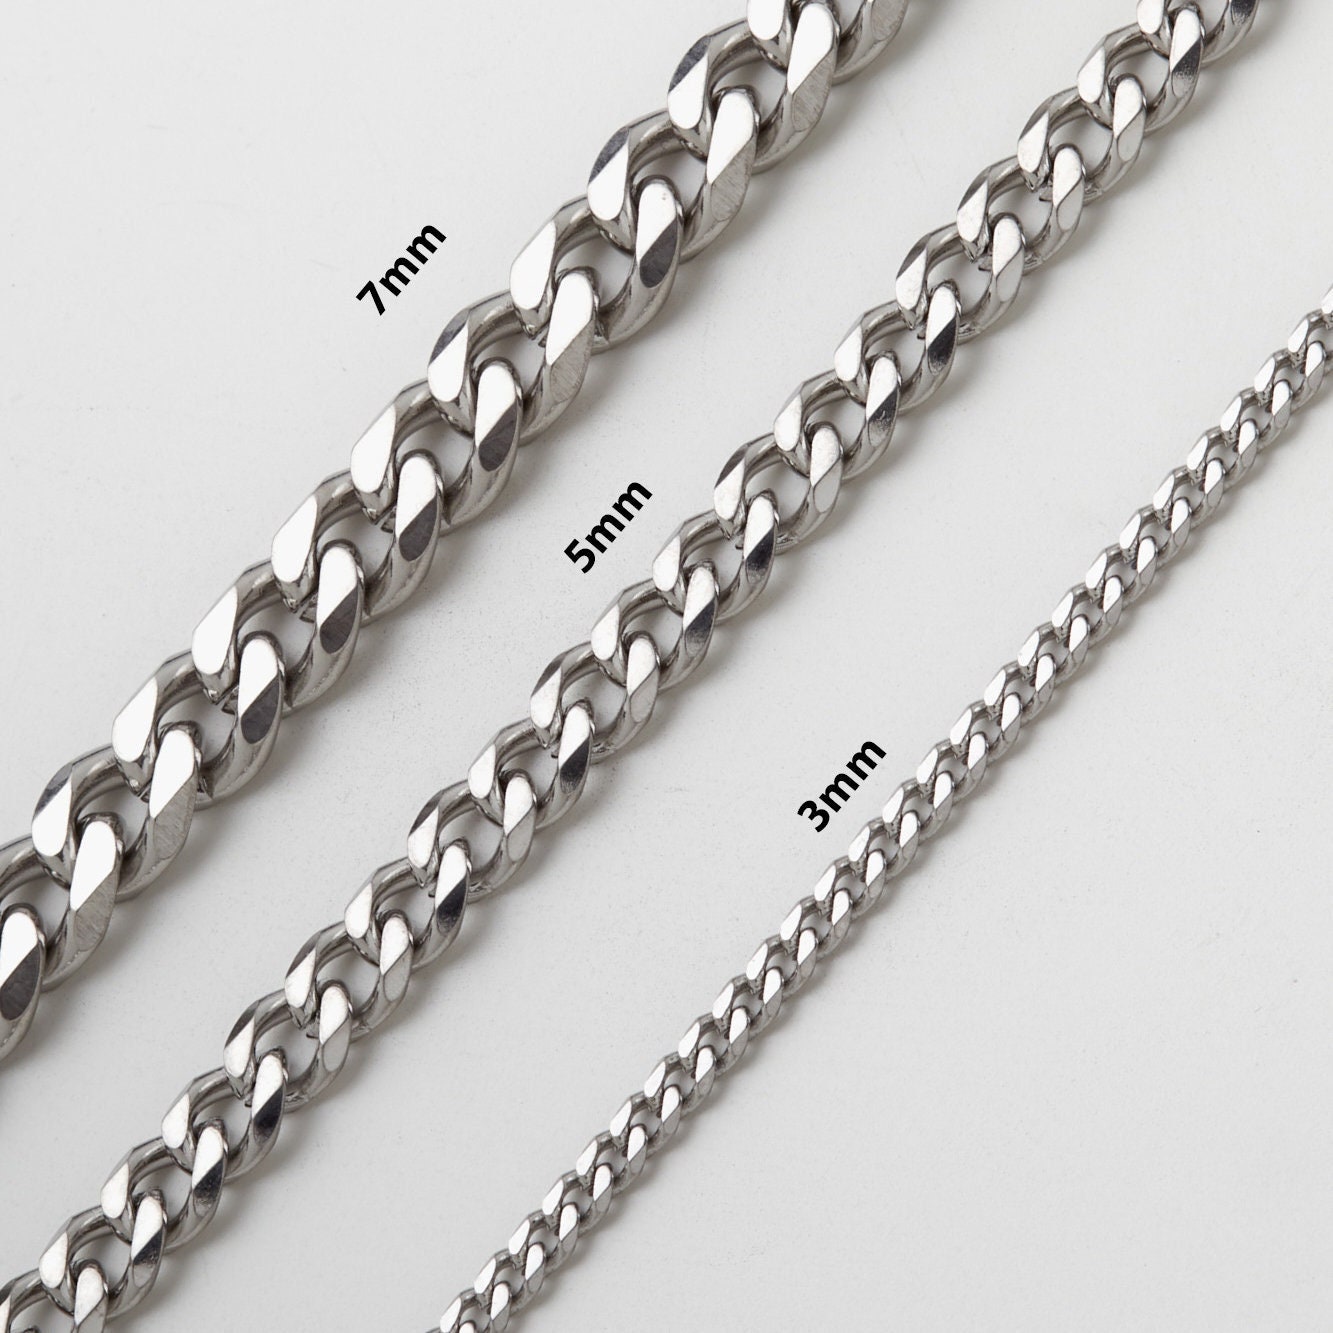 Gliederhalskette Silberkette Stainless Steel Chain Silber Herrenkette Geschenk Für Herren Gliederkette 925 Kette von Vielring